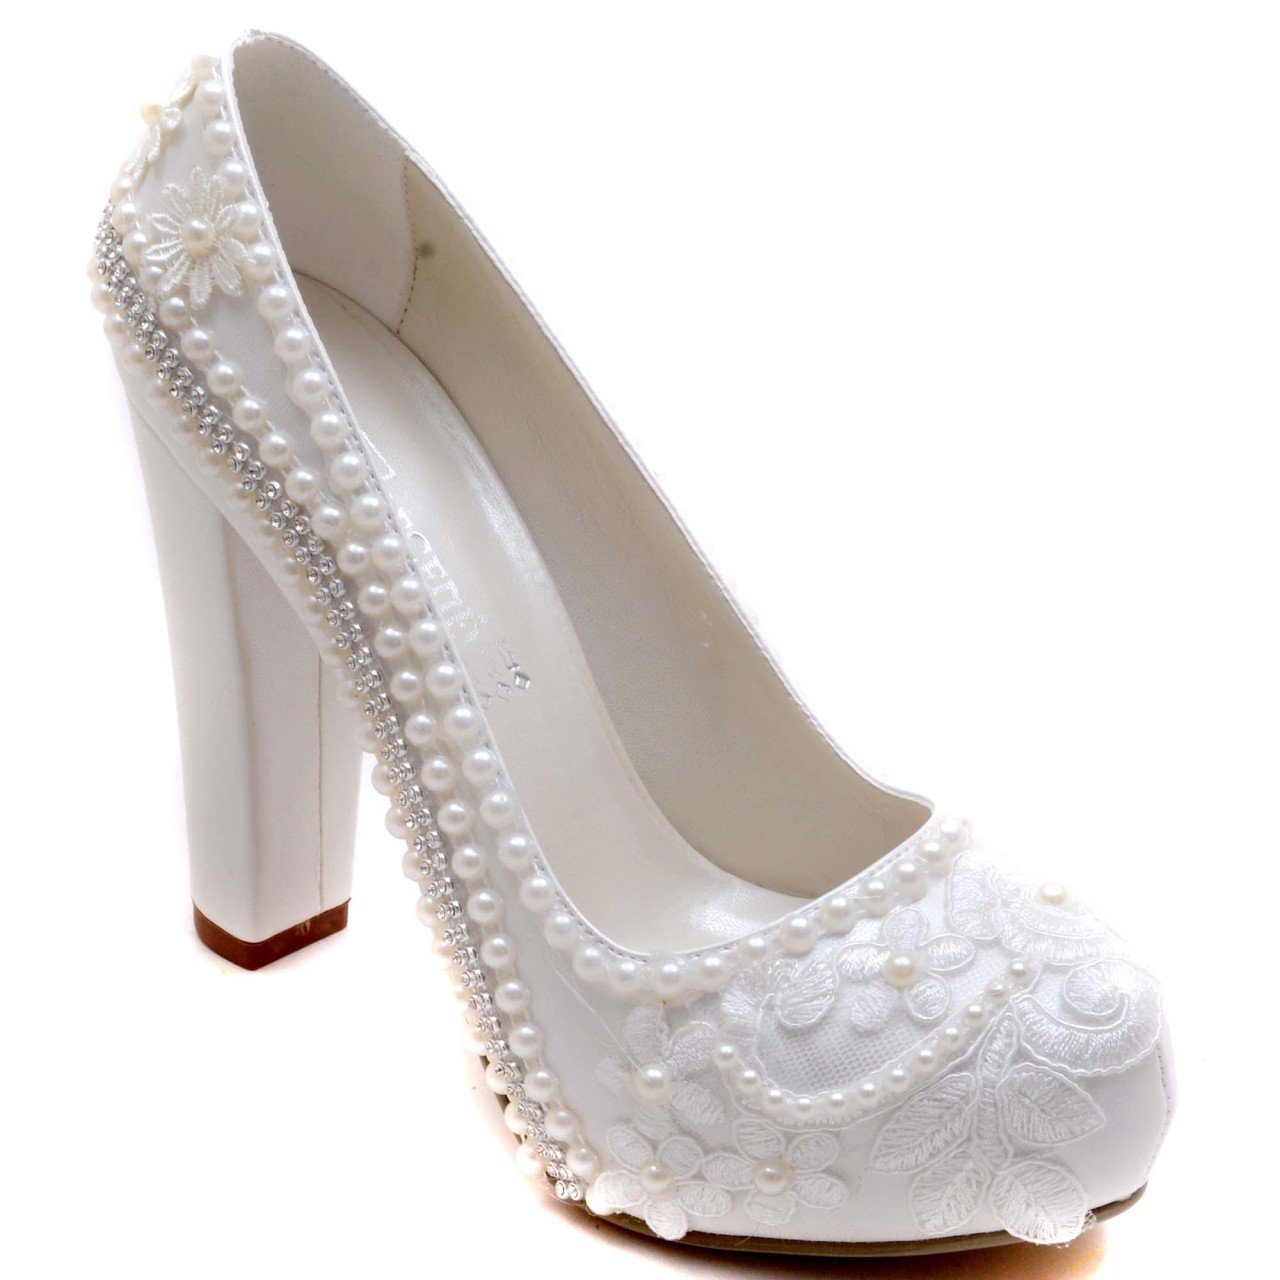 920-G Klasik Gelin Ayakkabısı - Beyaz